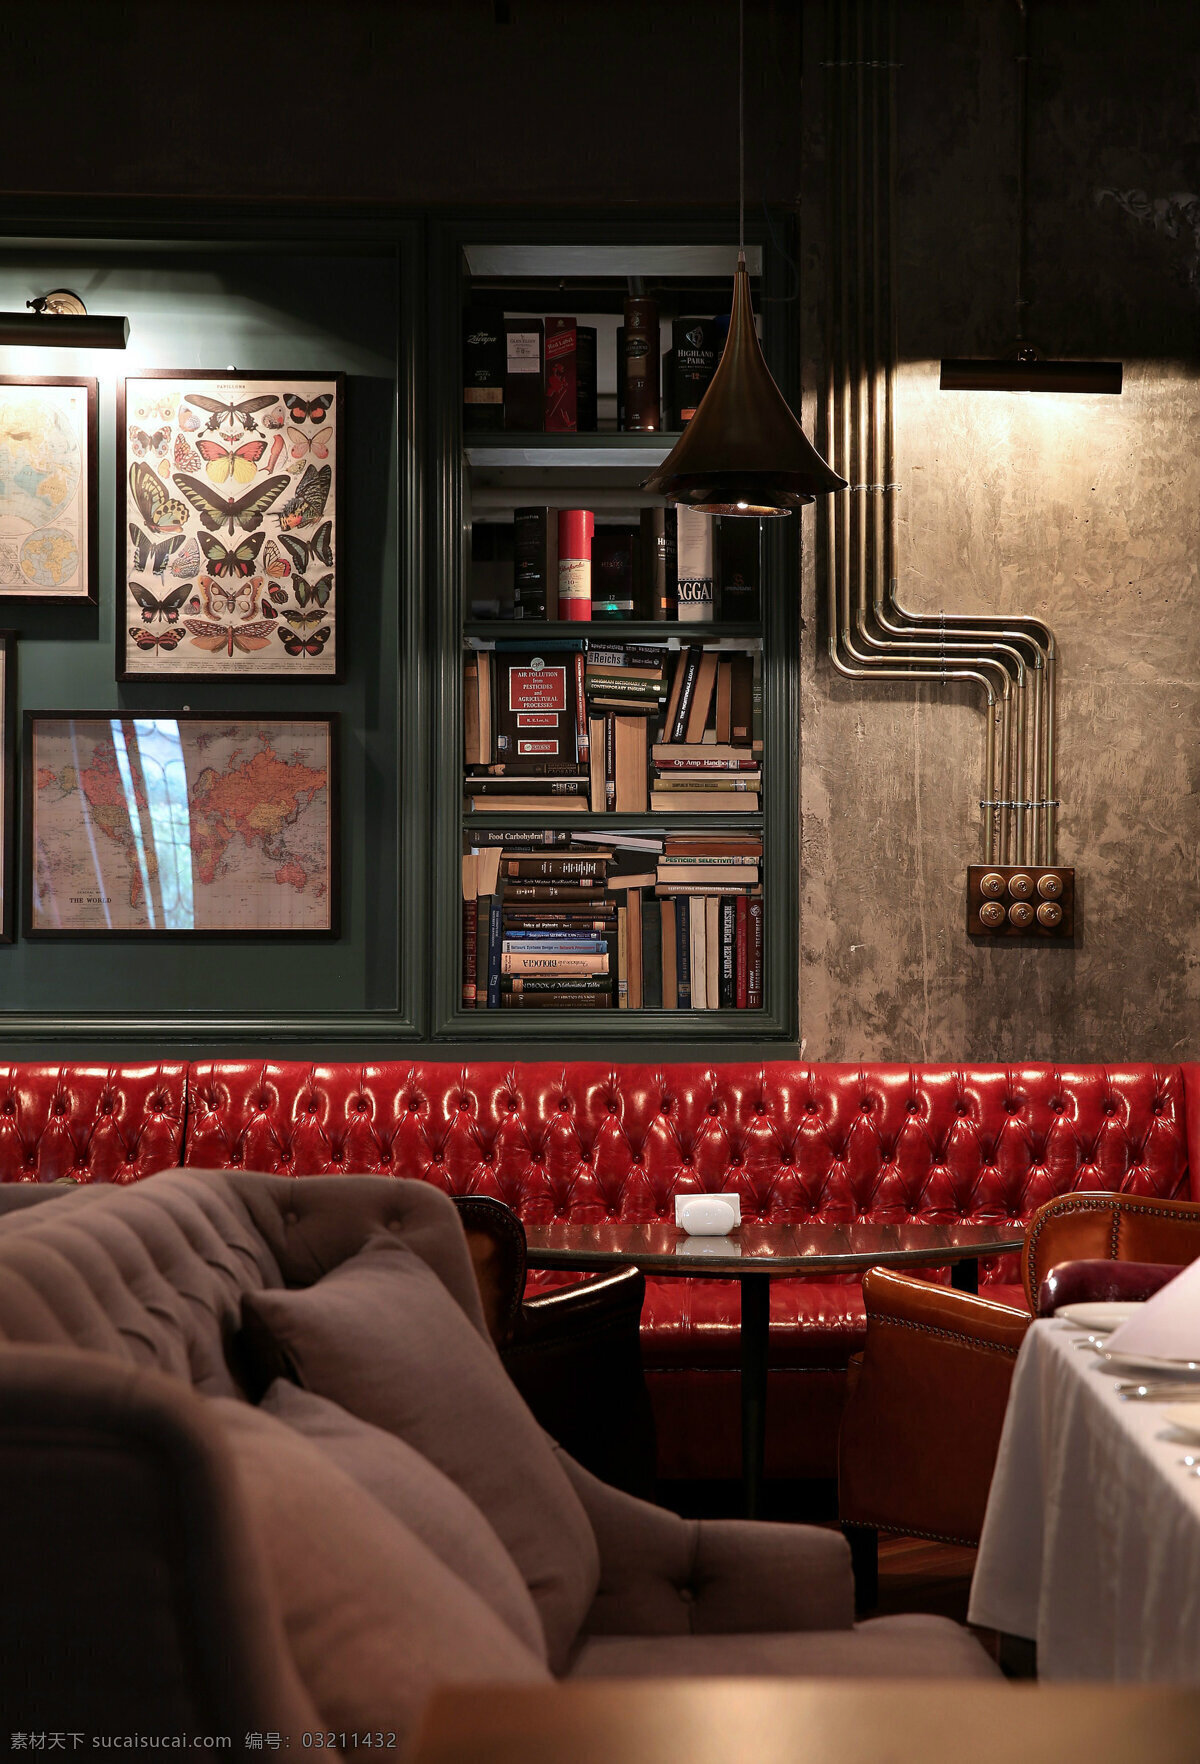 复古 室内 餐厅 背景 墙 实景 效果图 室内设计 装修 装修设计 环境设计 时尚 高清 背景墙 沙发 红色